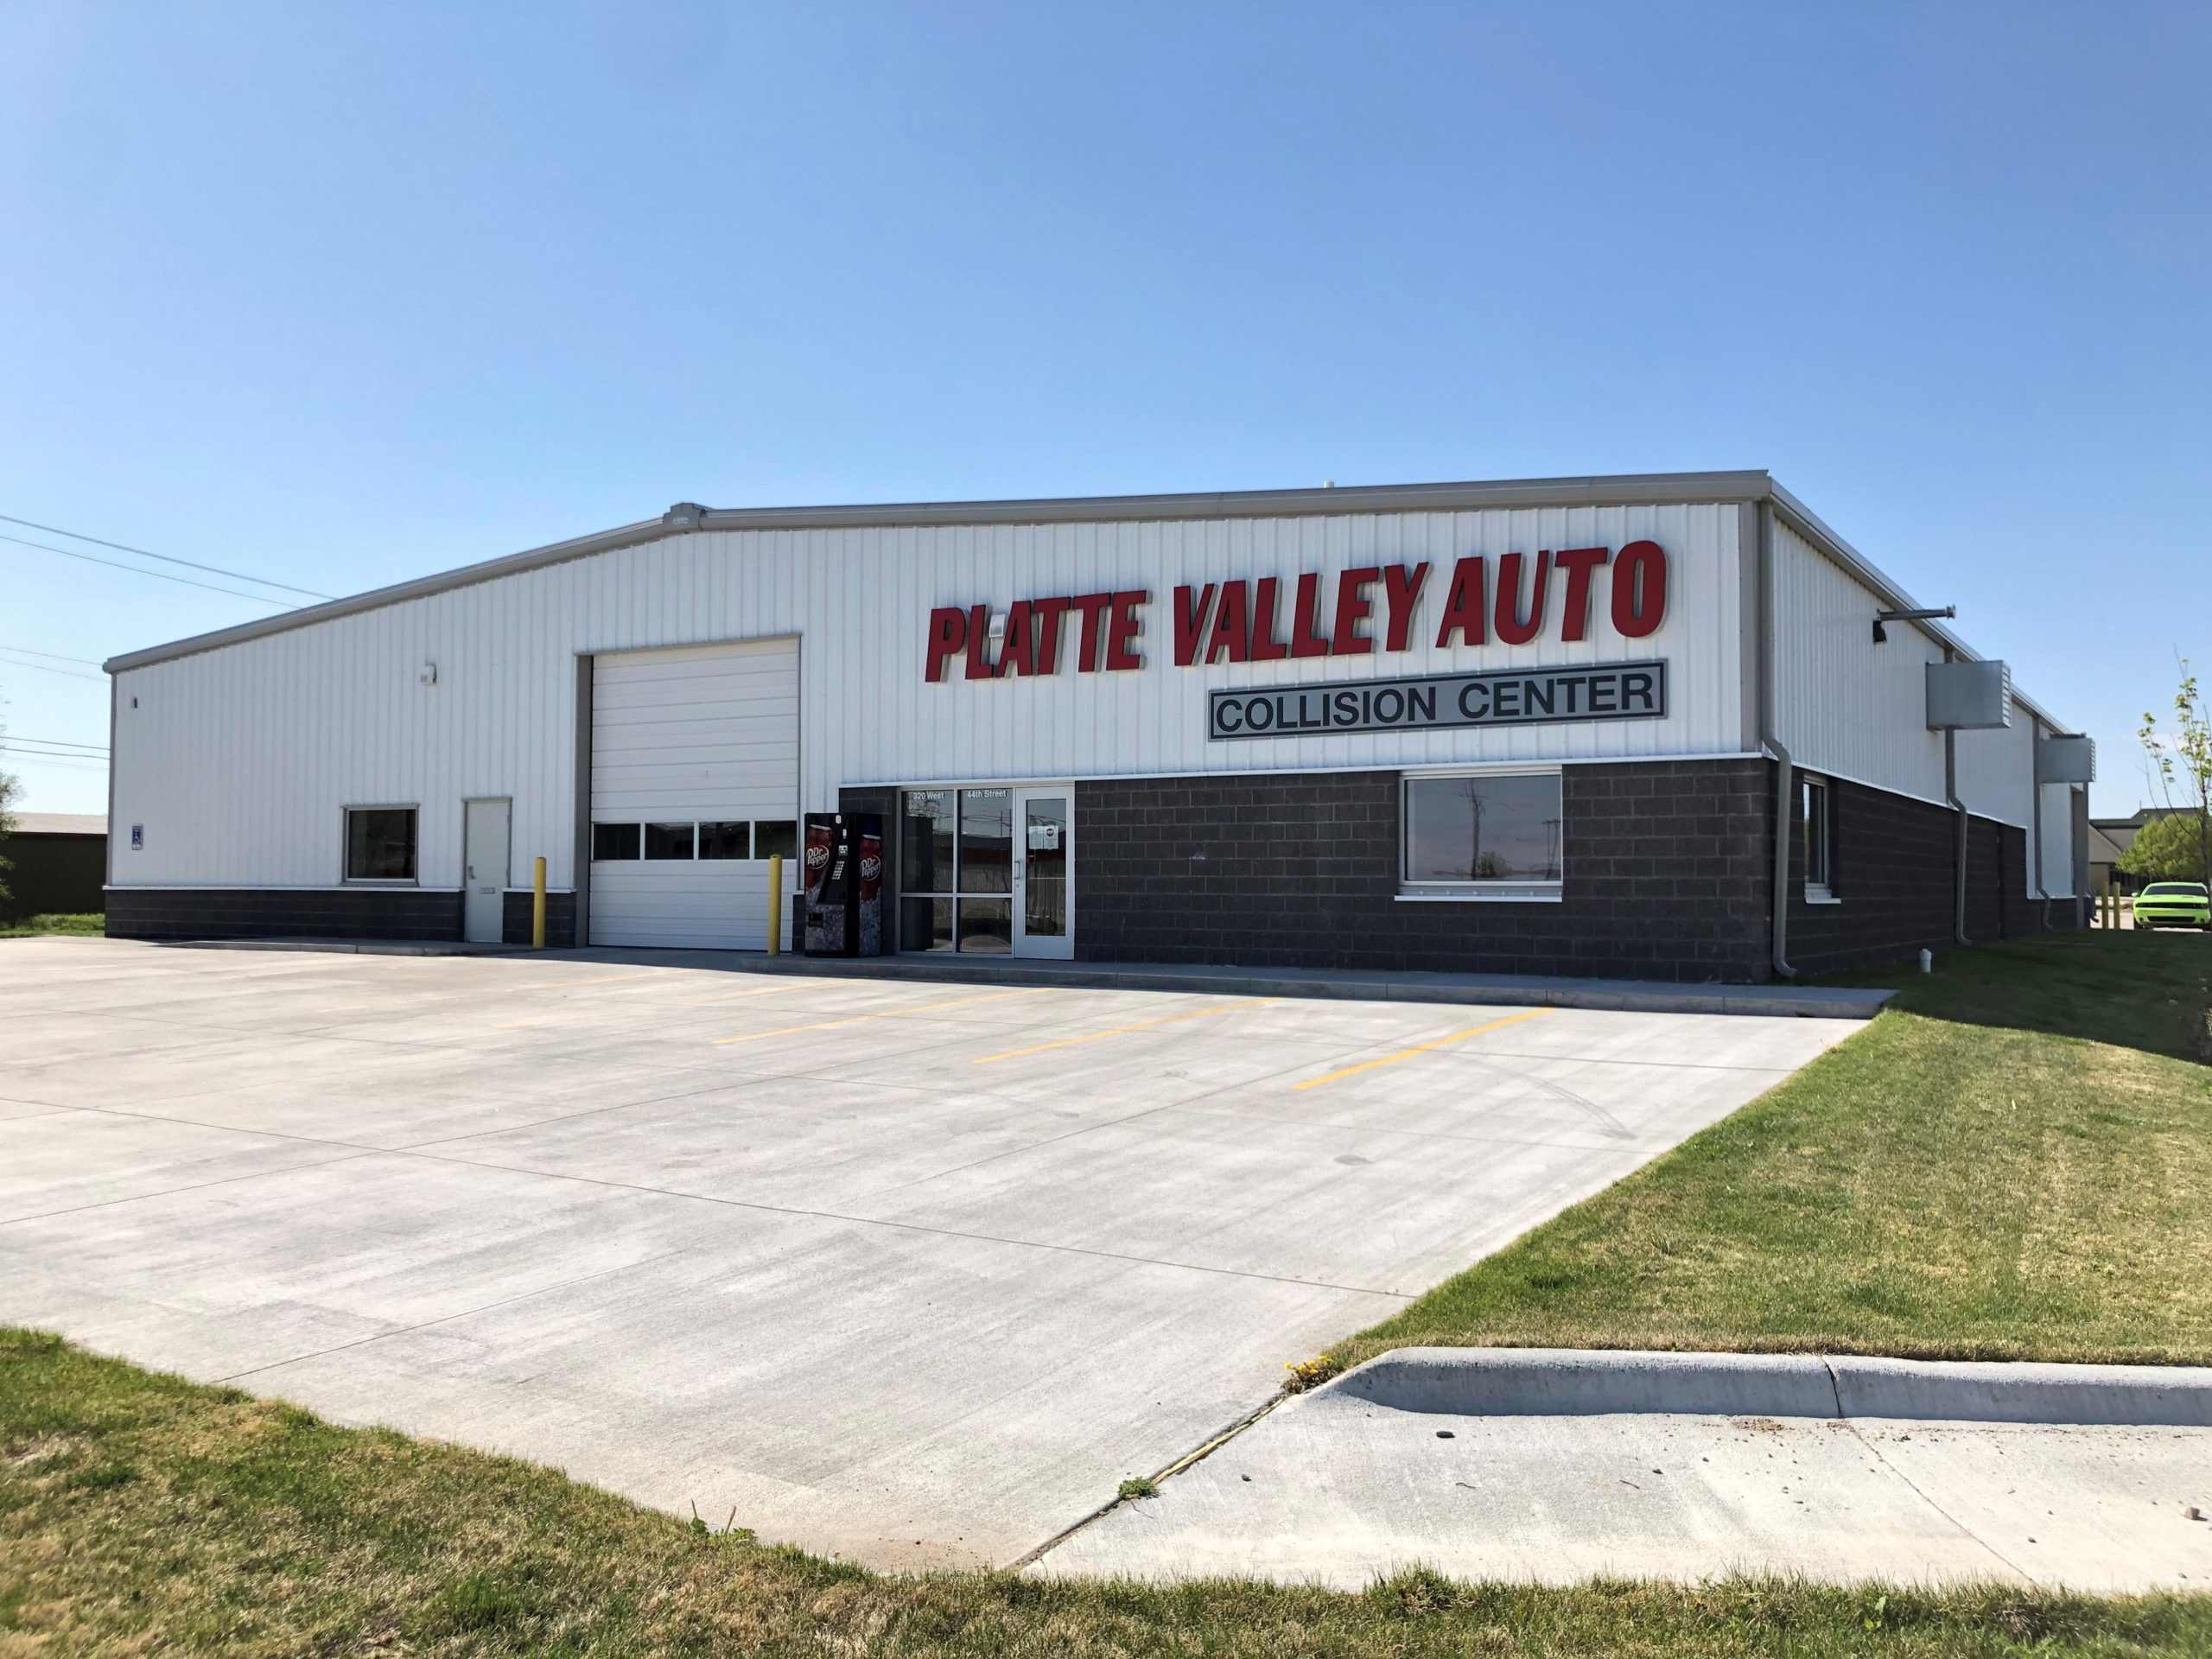 Platte Valley Auto – Collision Center